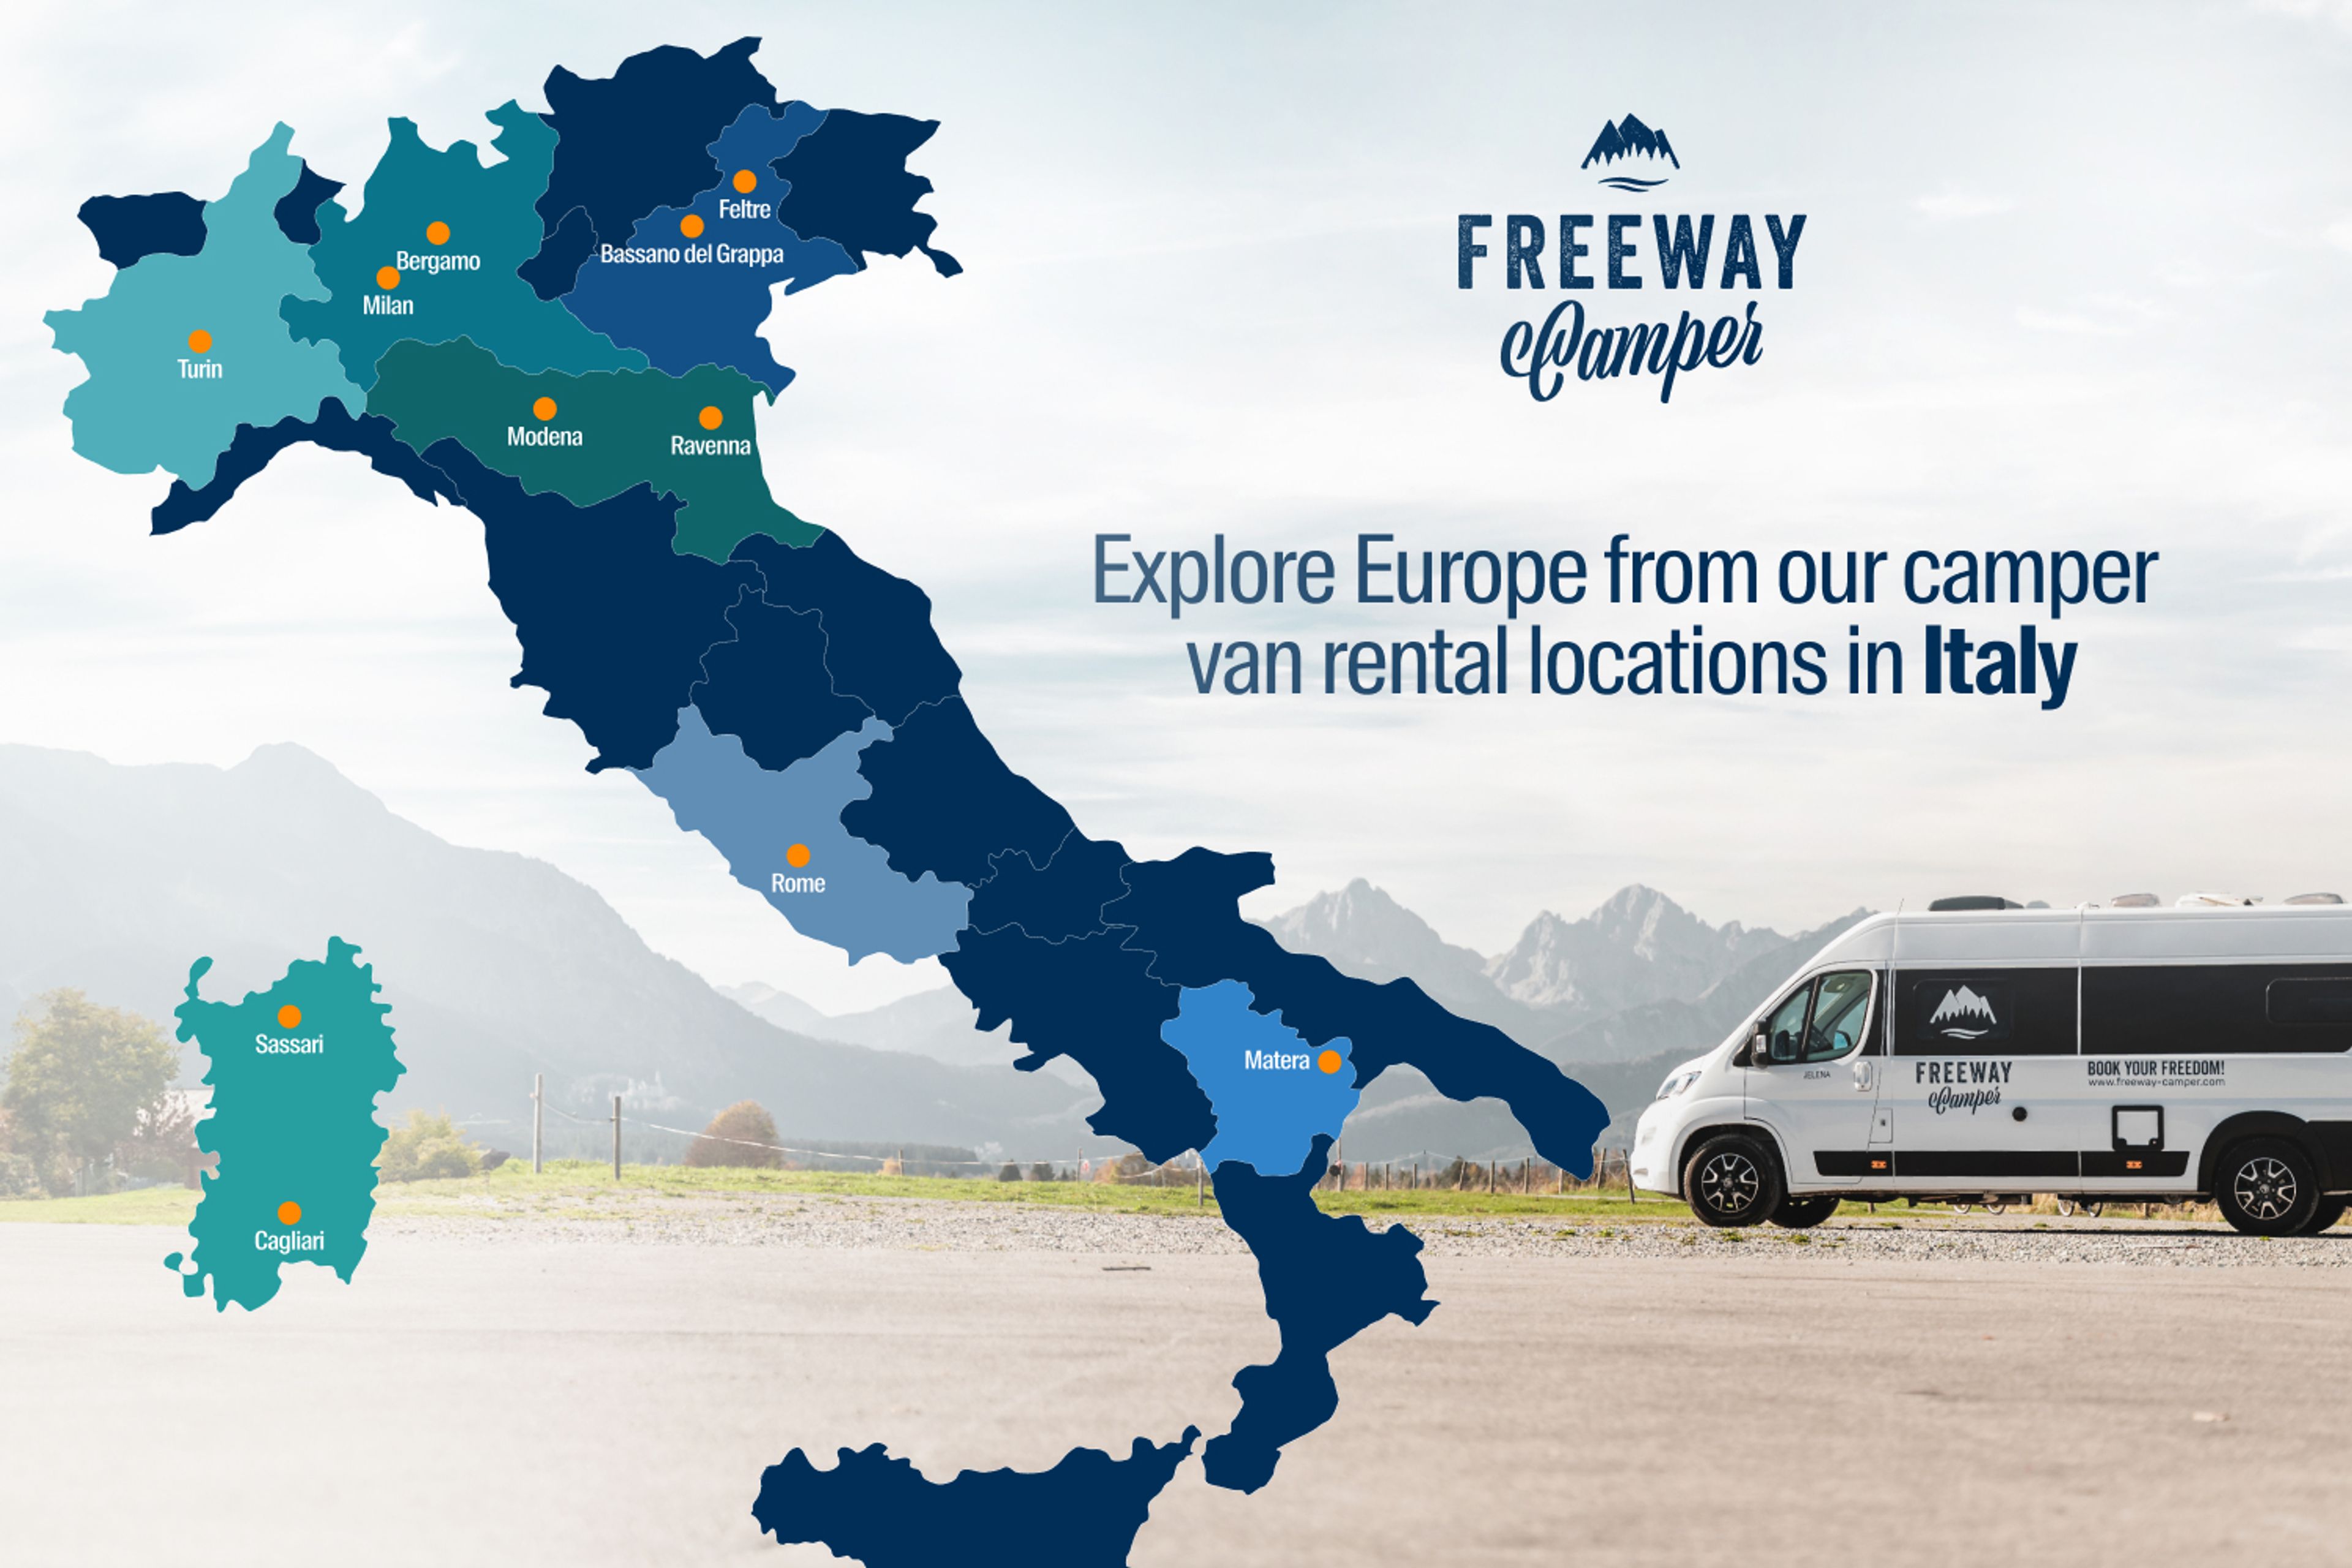 FreewayCamper station network in Italy